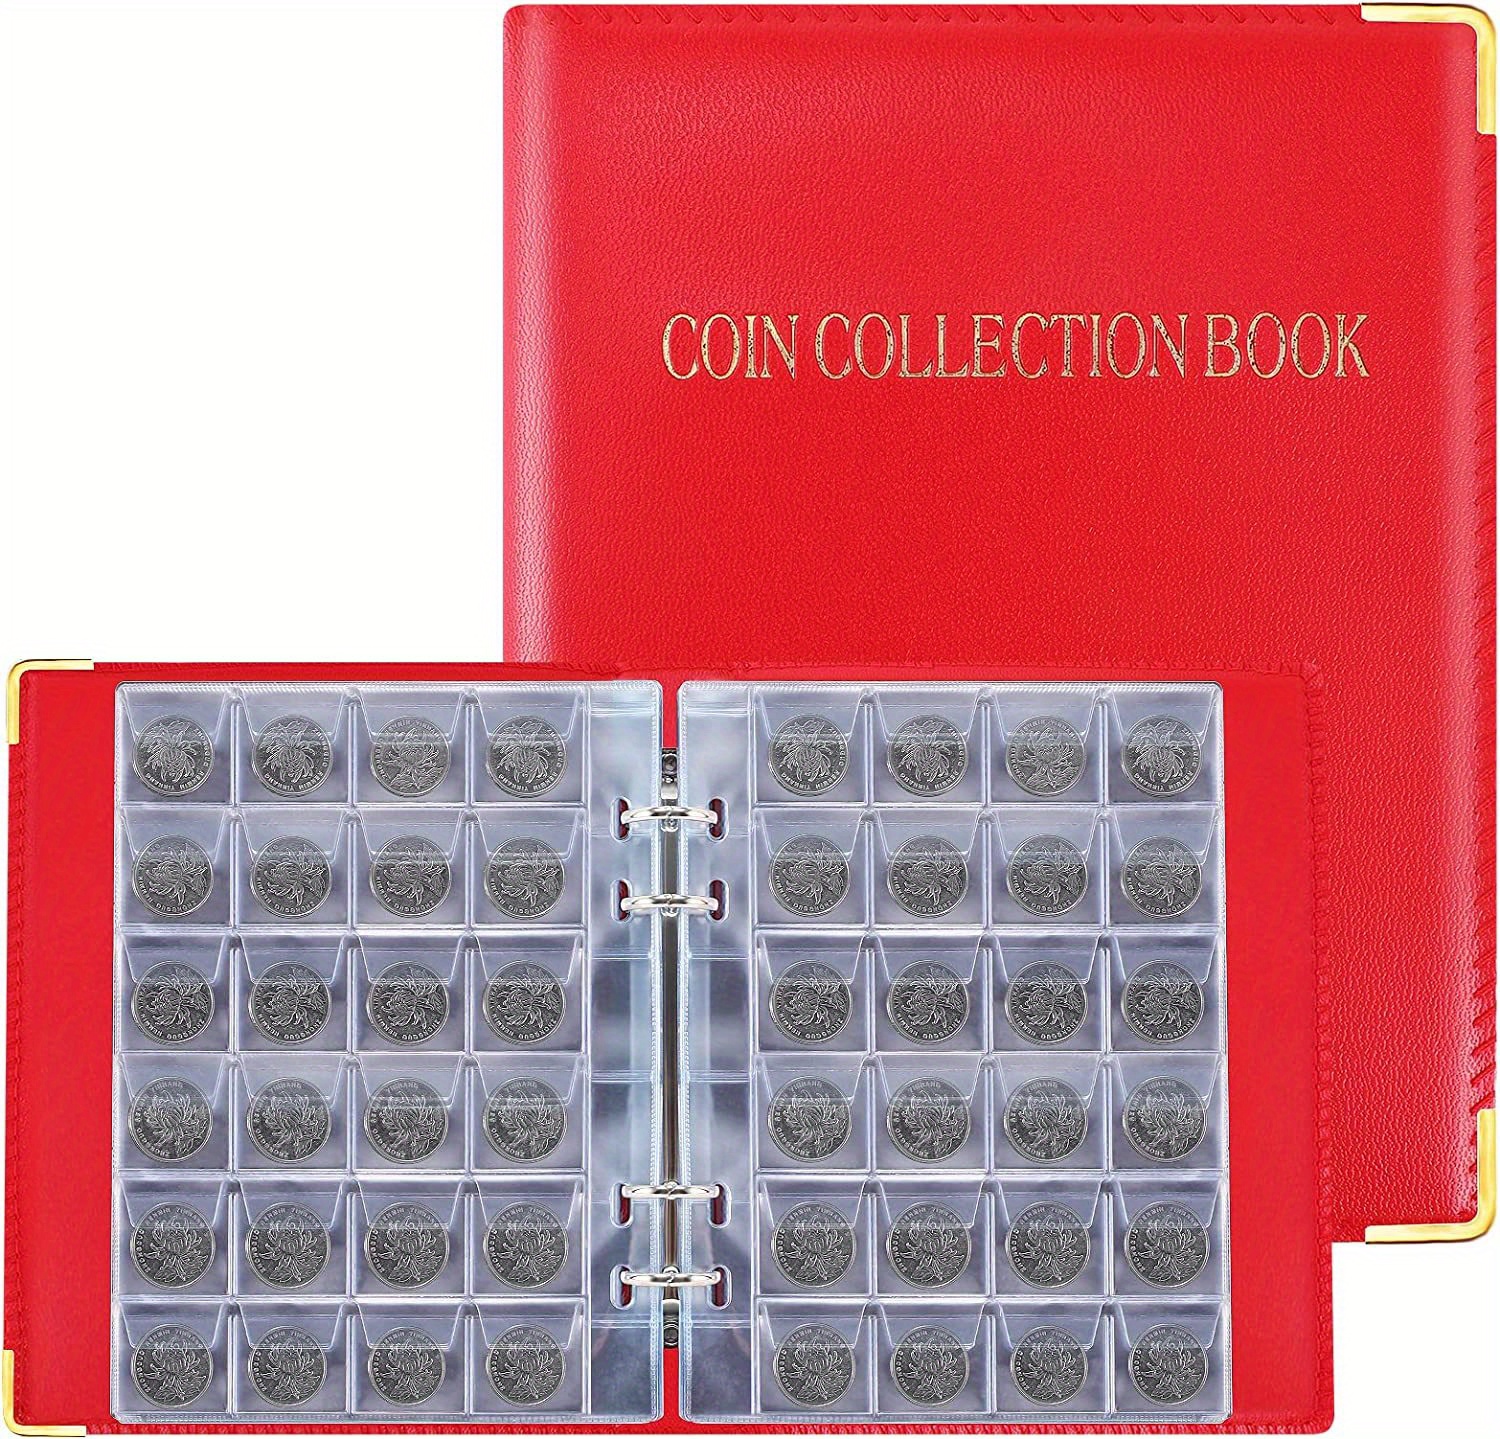 FGJCJ Raccoglitore Monete, 480 Tasche Album della Collezione di Monete, 3x3  e 4x4cm Album Monete, Porta Monete da Collezione, Album Monete da  Collezione con 400 Adesivi per Monete, Monete Souvenir : 